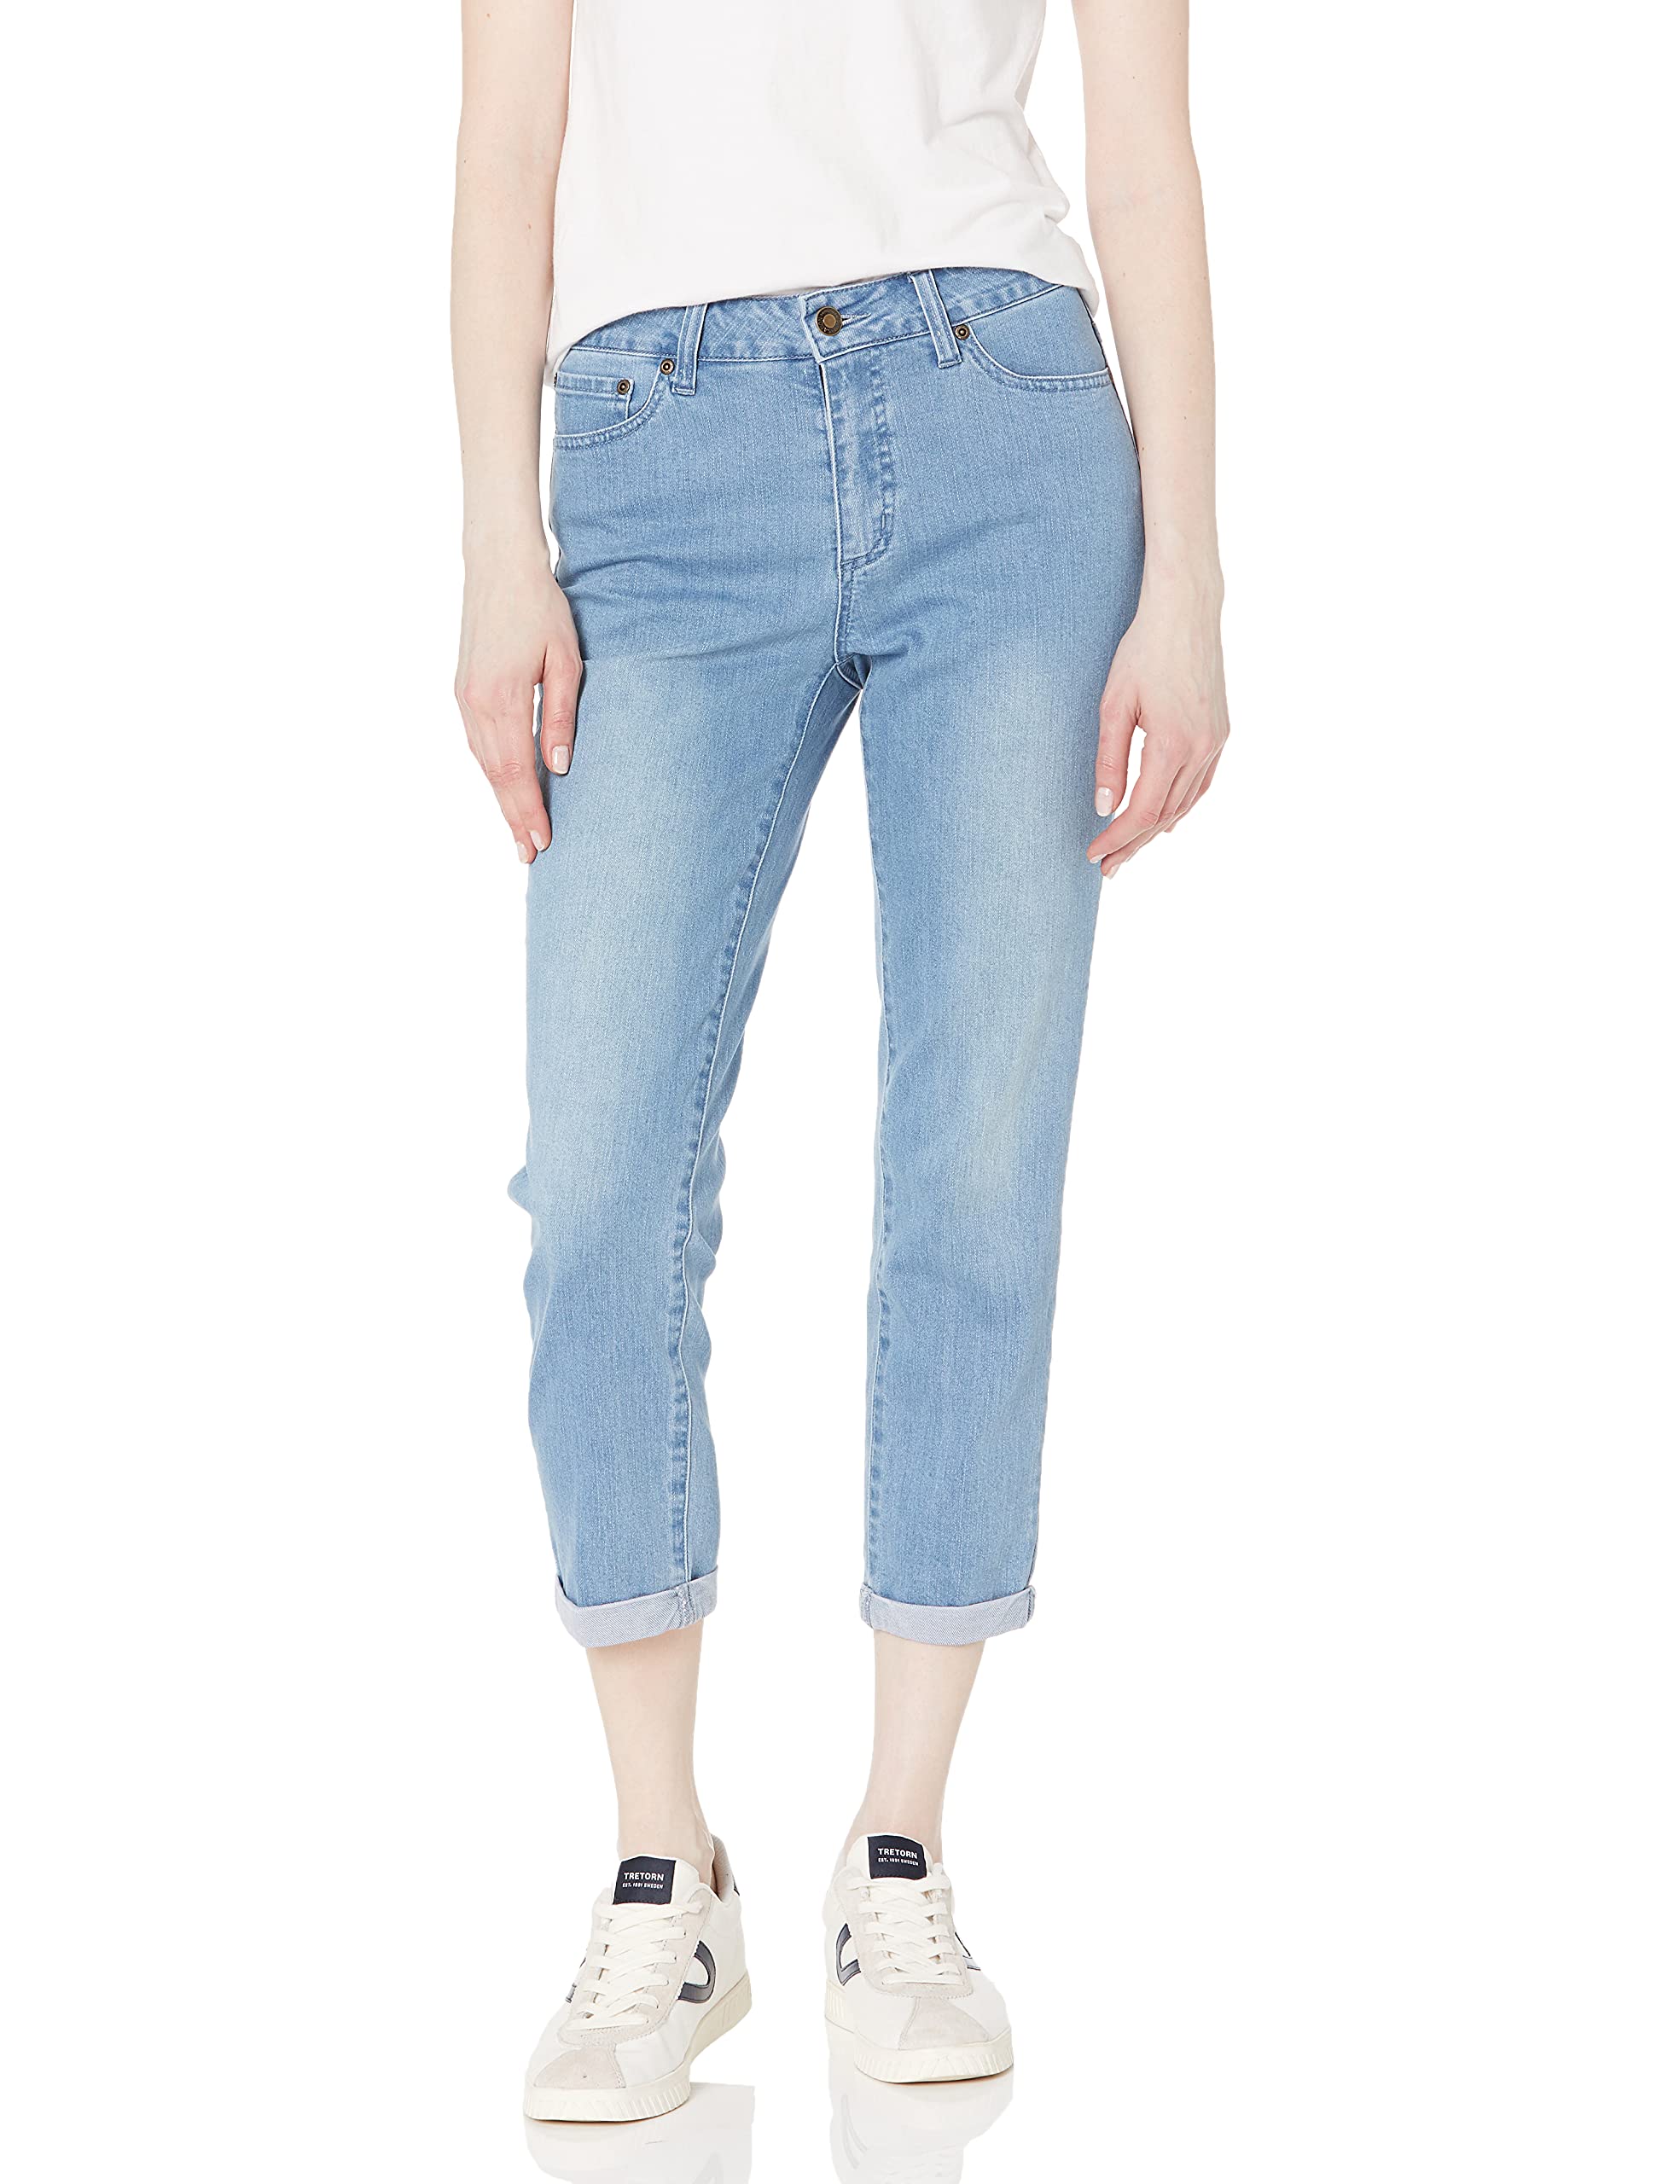 SLIM-SATION Women's Contour Waist 5-Pocket Solid Slim Jean Style Crop Pant